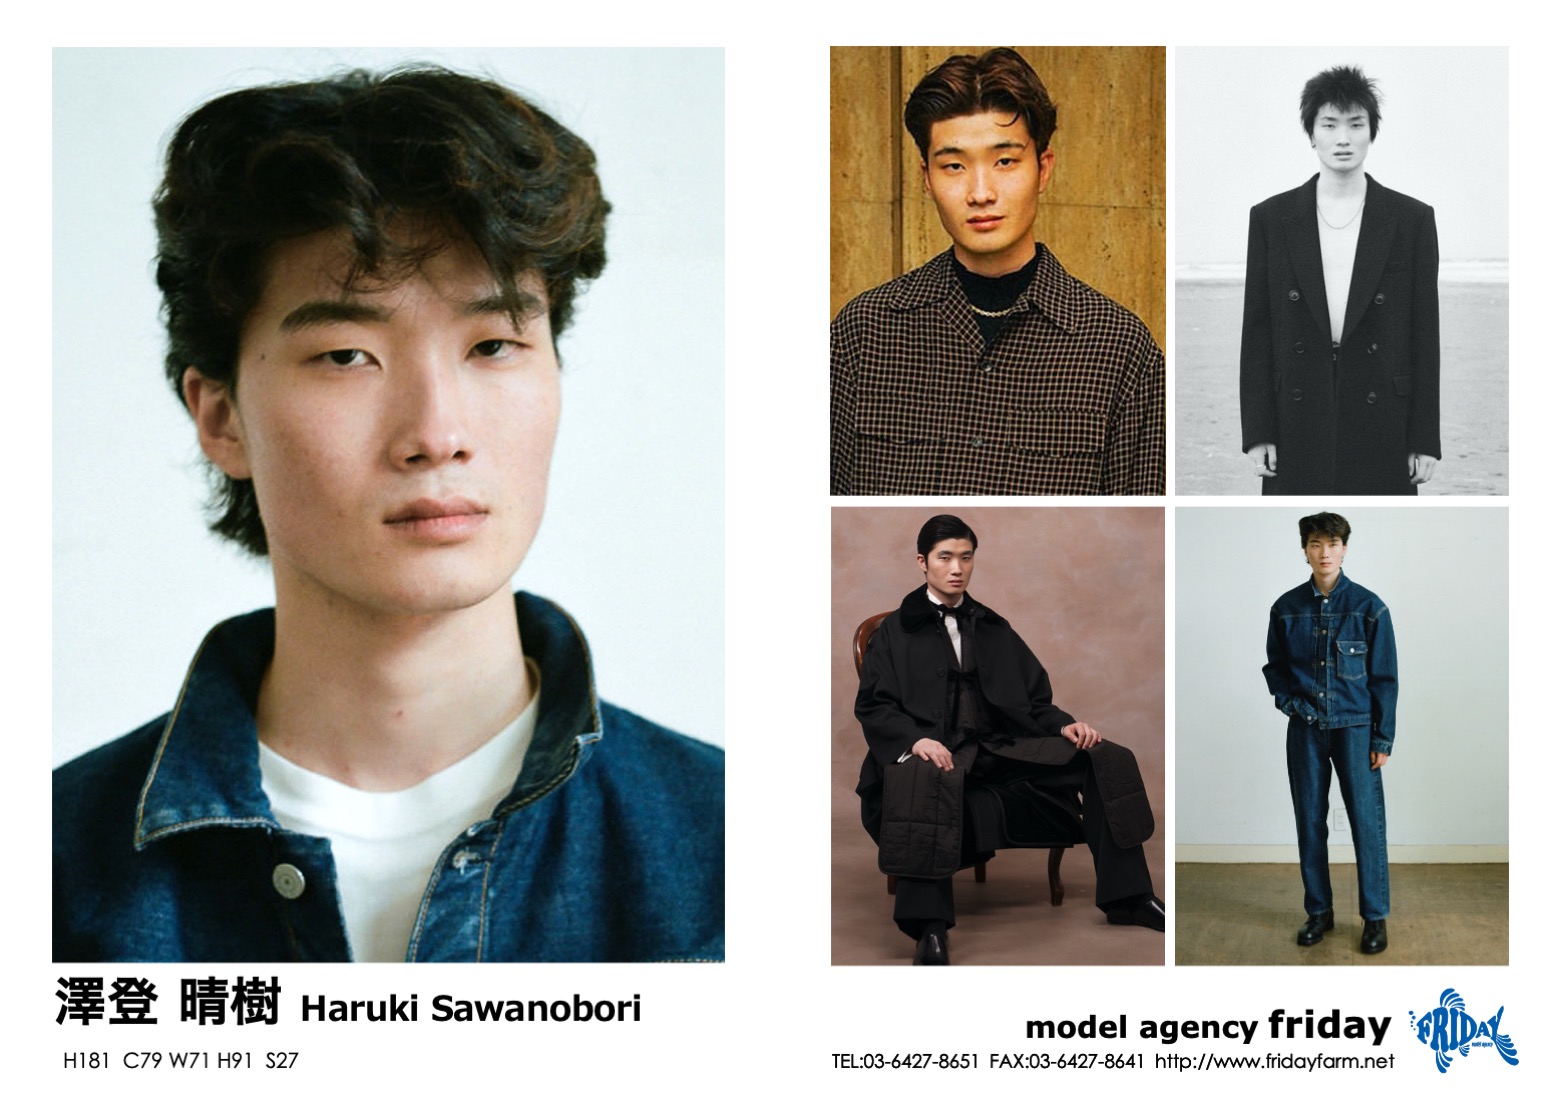 澤登 晴樹 - Haruki Sawanobori | model agency friday